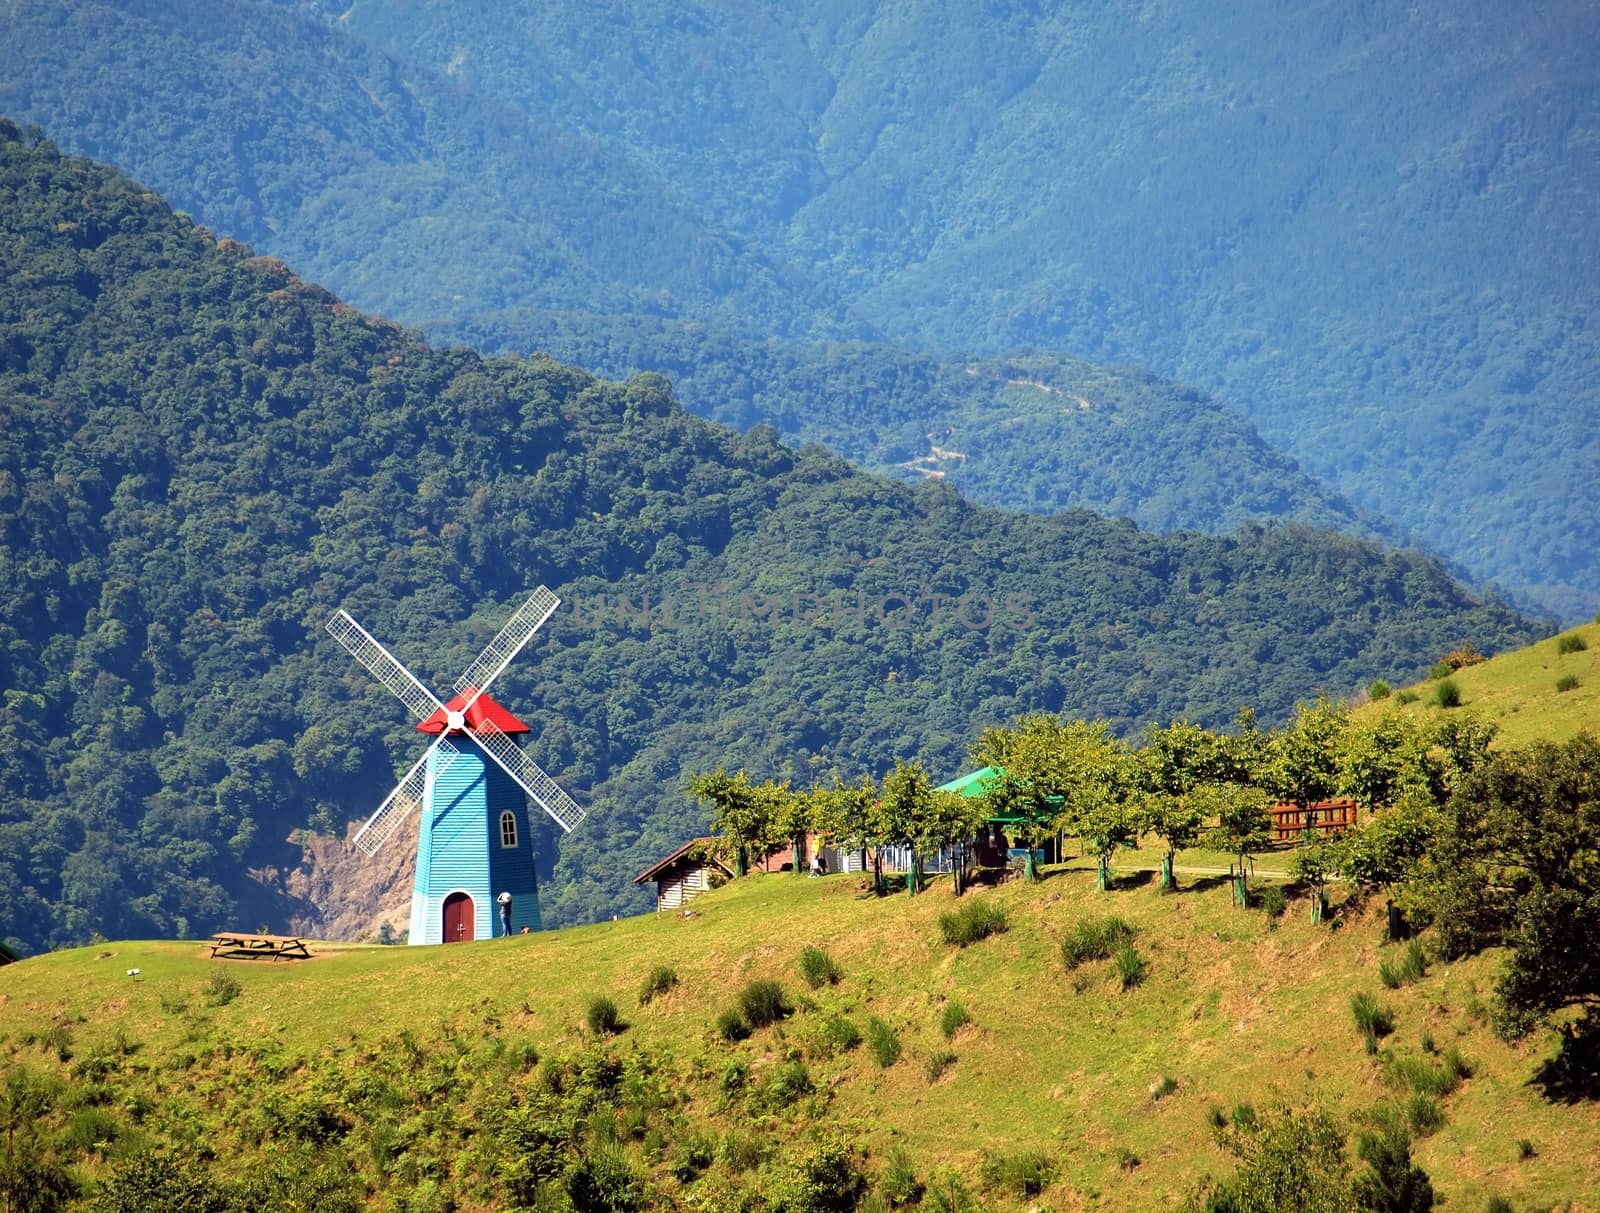 Alpine Scenery with a Windmill by shiyali